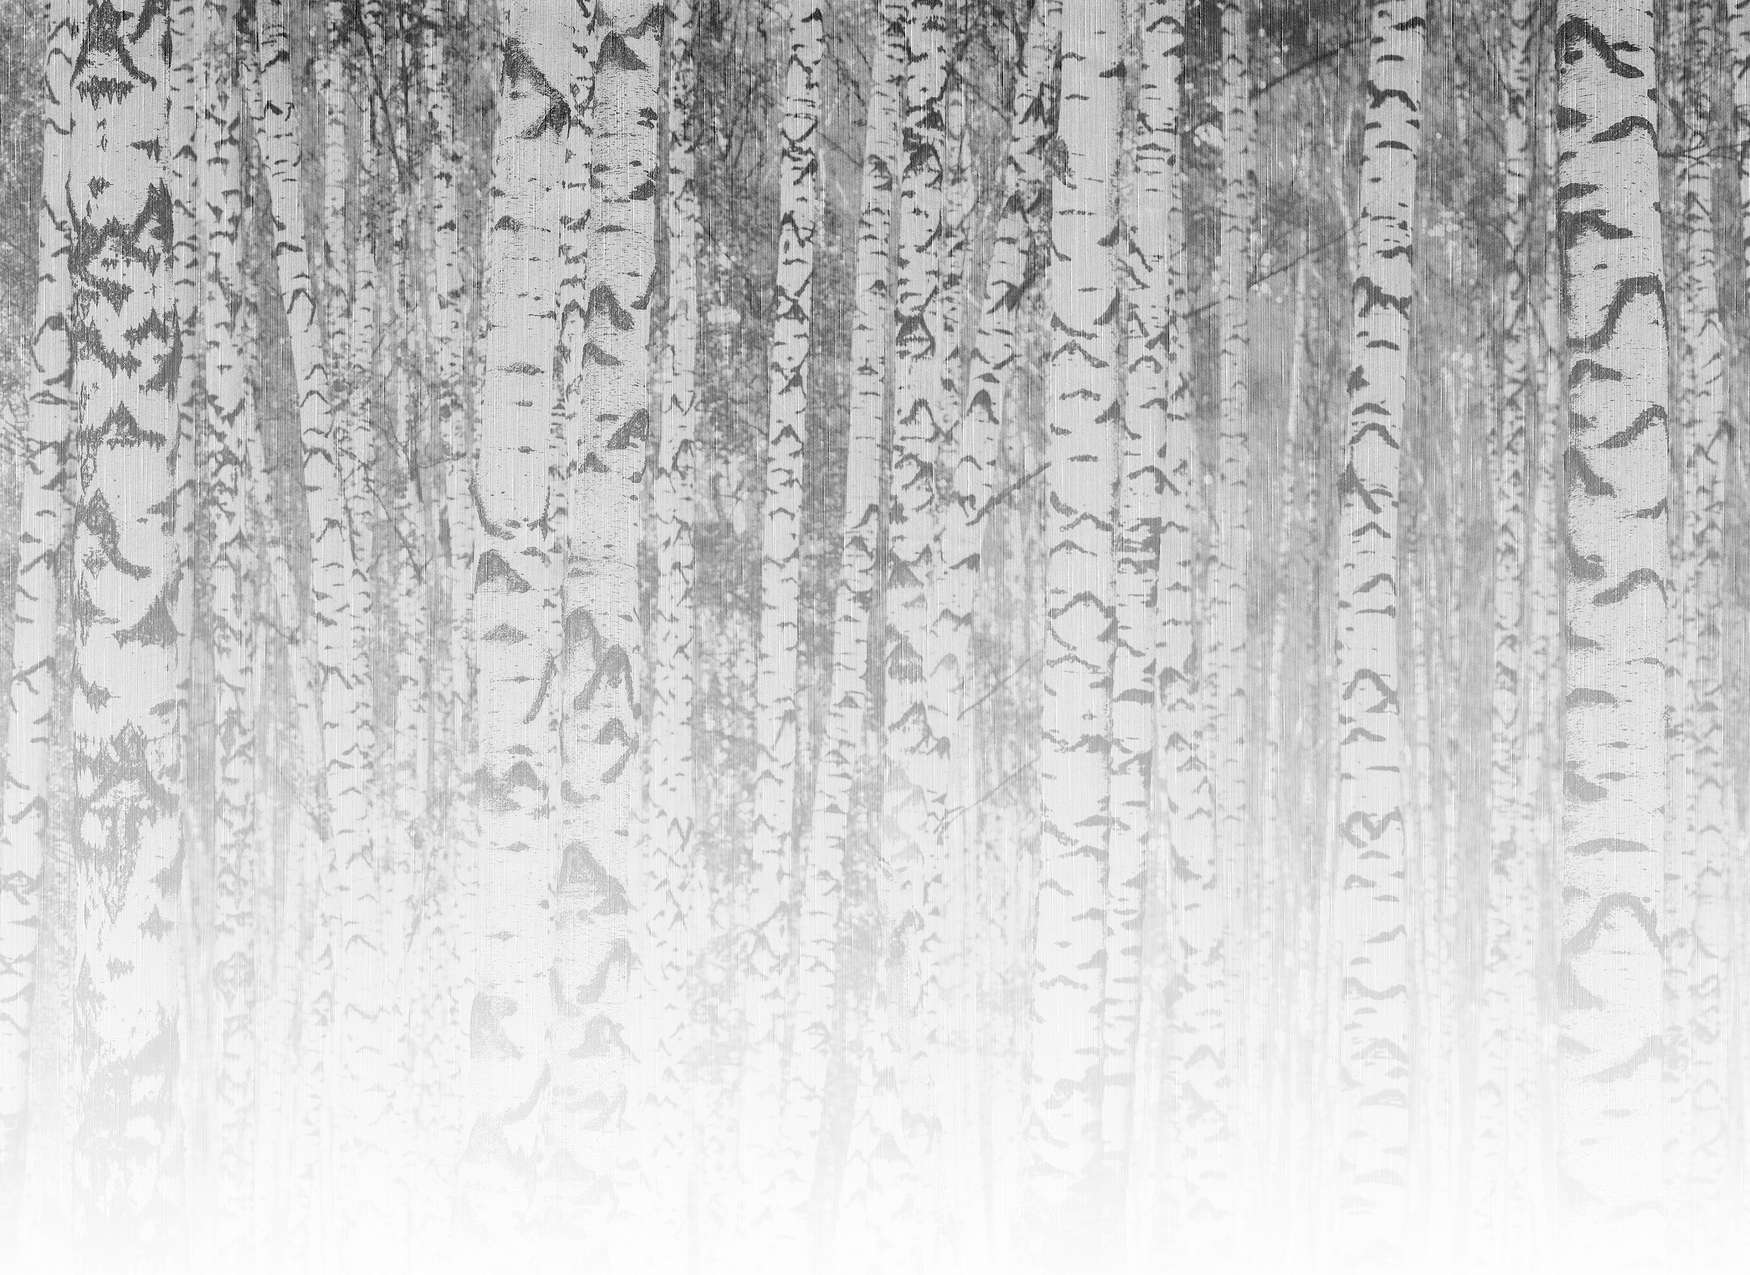             Fototapete helle Birken Baumstämme im nebligen Wald – Schwarz-Weiß
        